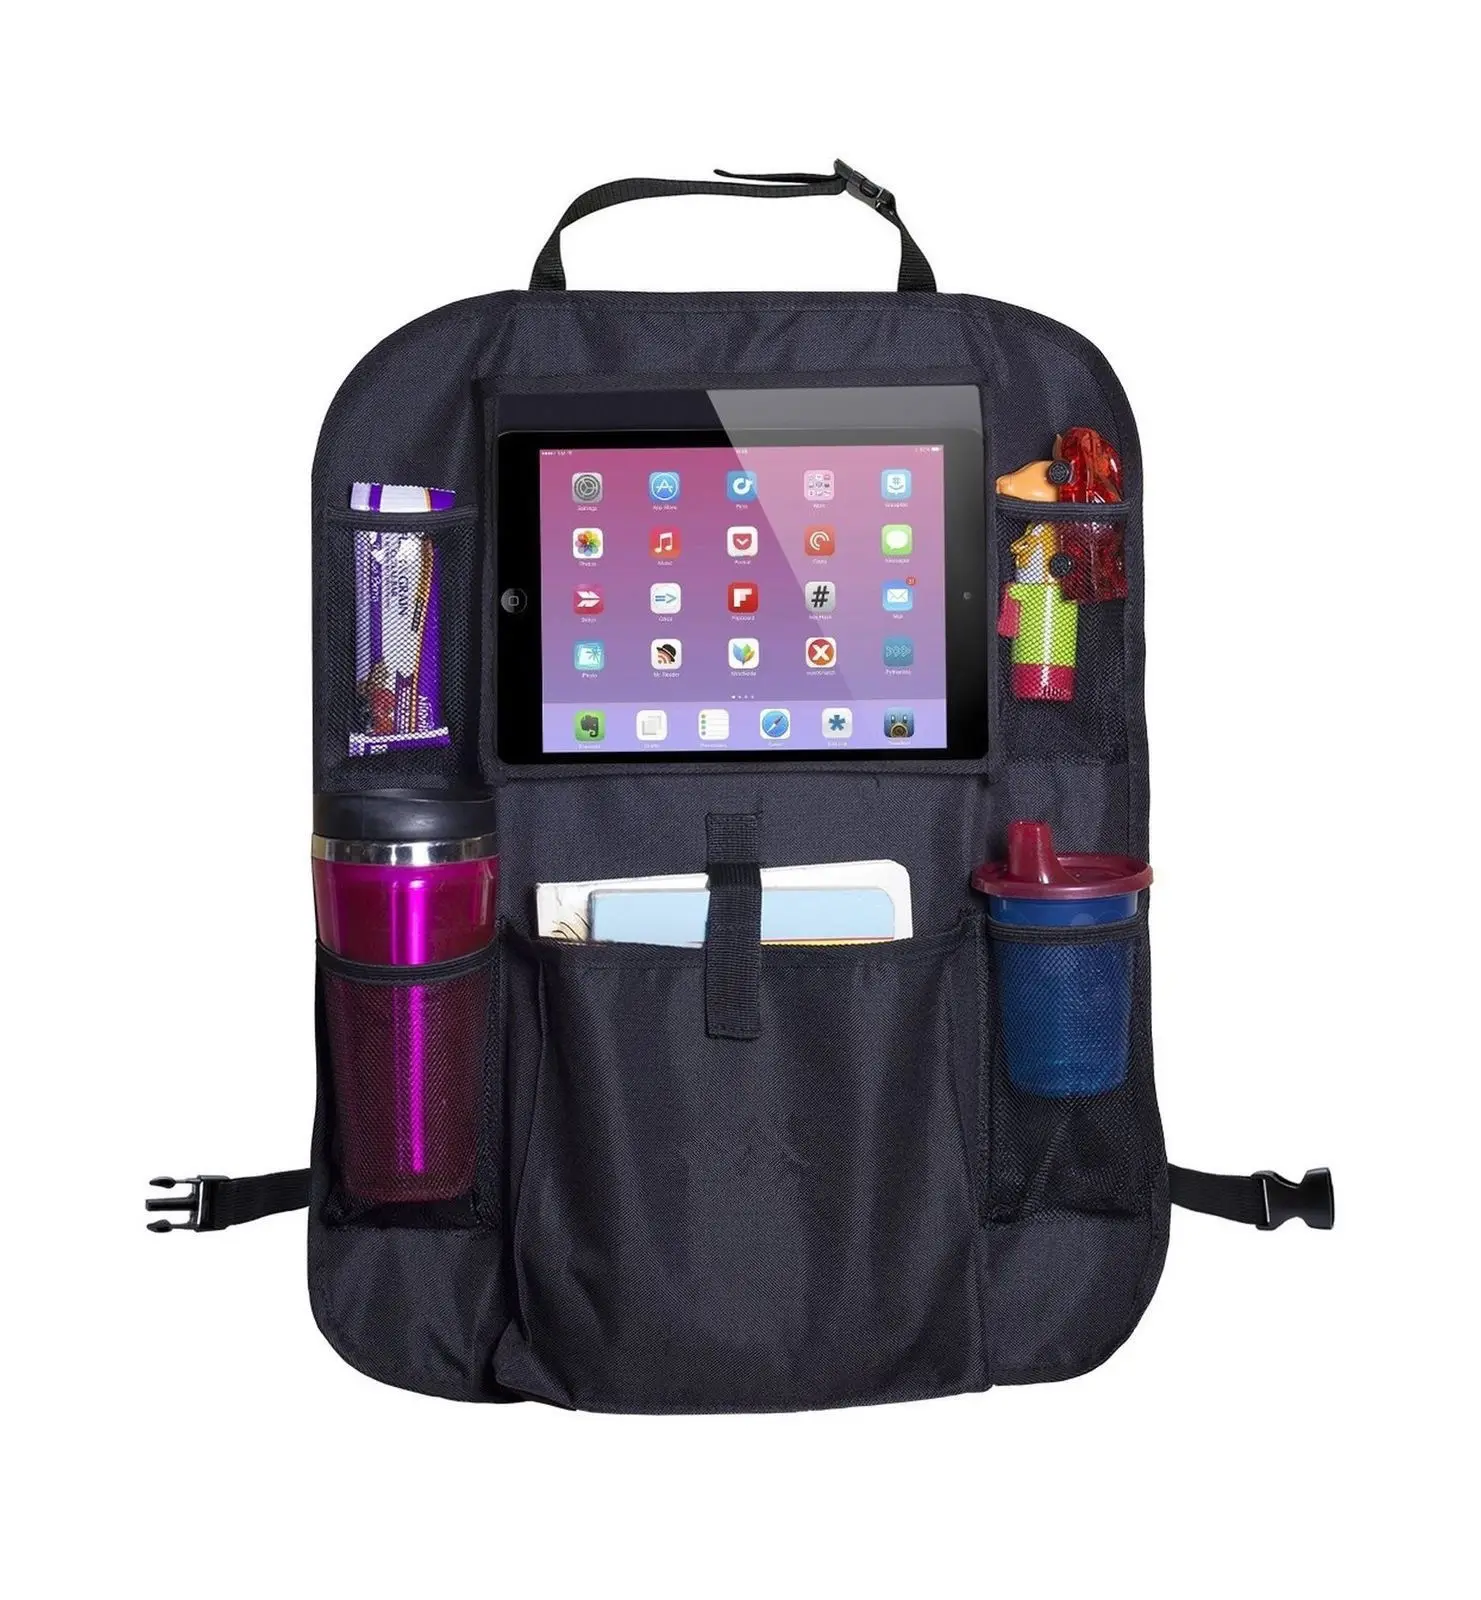 Черный кожаный чехол-органайзер на заднее сиденье автомобиля для хранения iPad, держатель для телефона с несколькими карманами